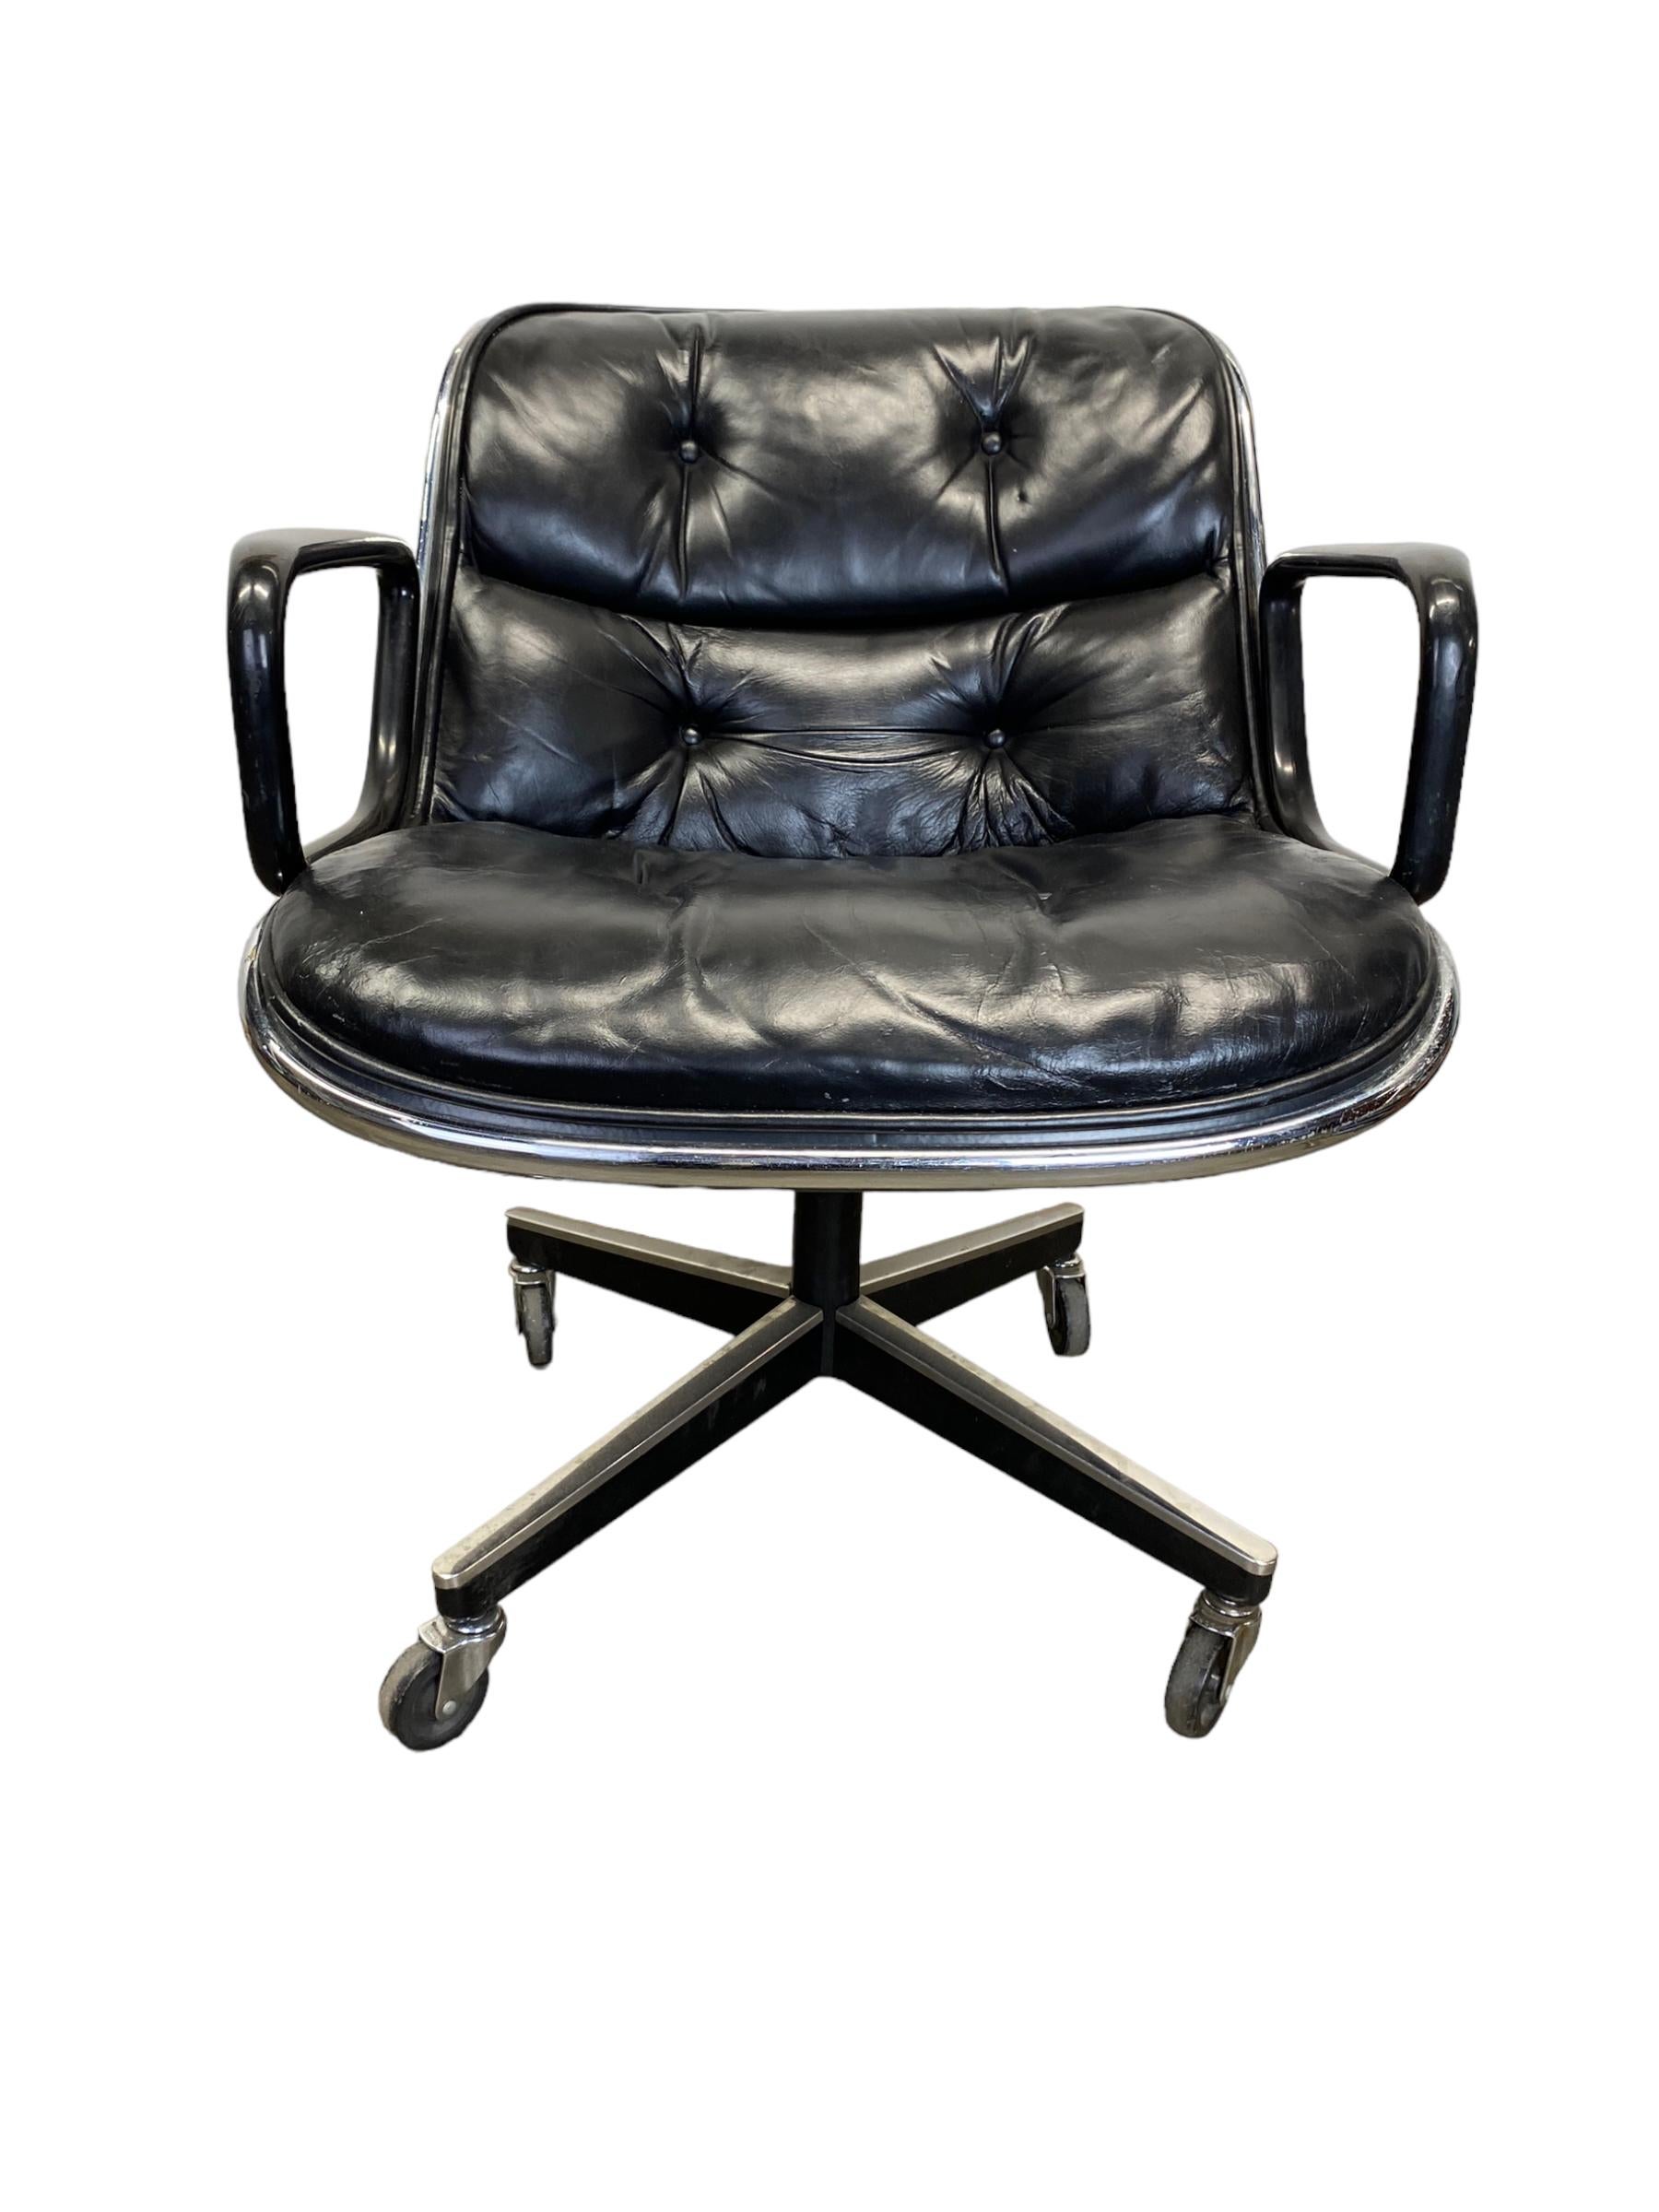 Vintage Charles Pollock für Knoll Chefsessel in schwarz blauem Leder. Dieser Chefsessel hat ein drehbares Fußkreuz mit manueller Höhenverstellung. Basis mit allen Rädern in funktionstüchtigem Zustand. Guter Vintage-Zustand, alters- und